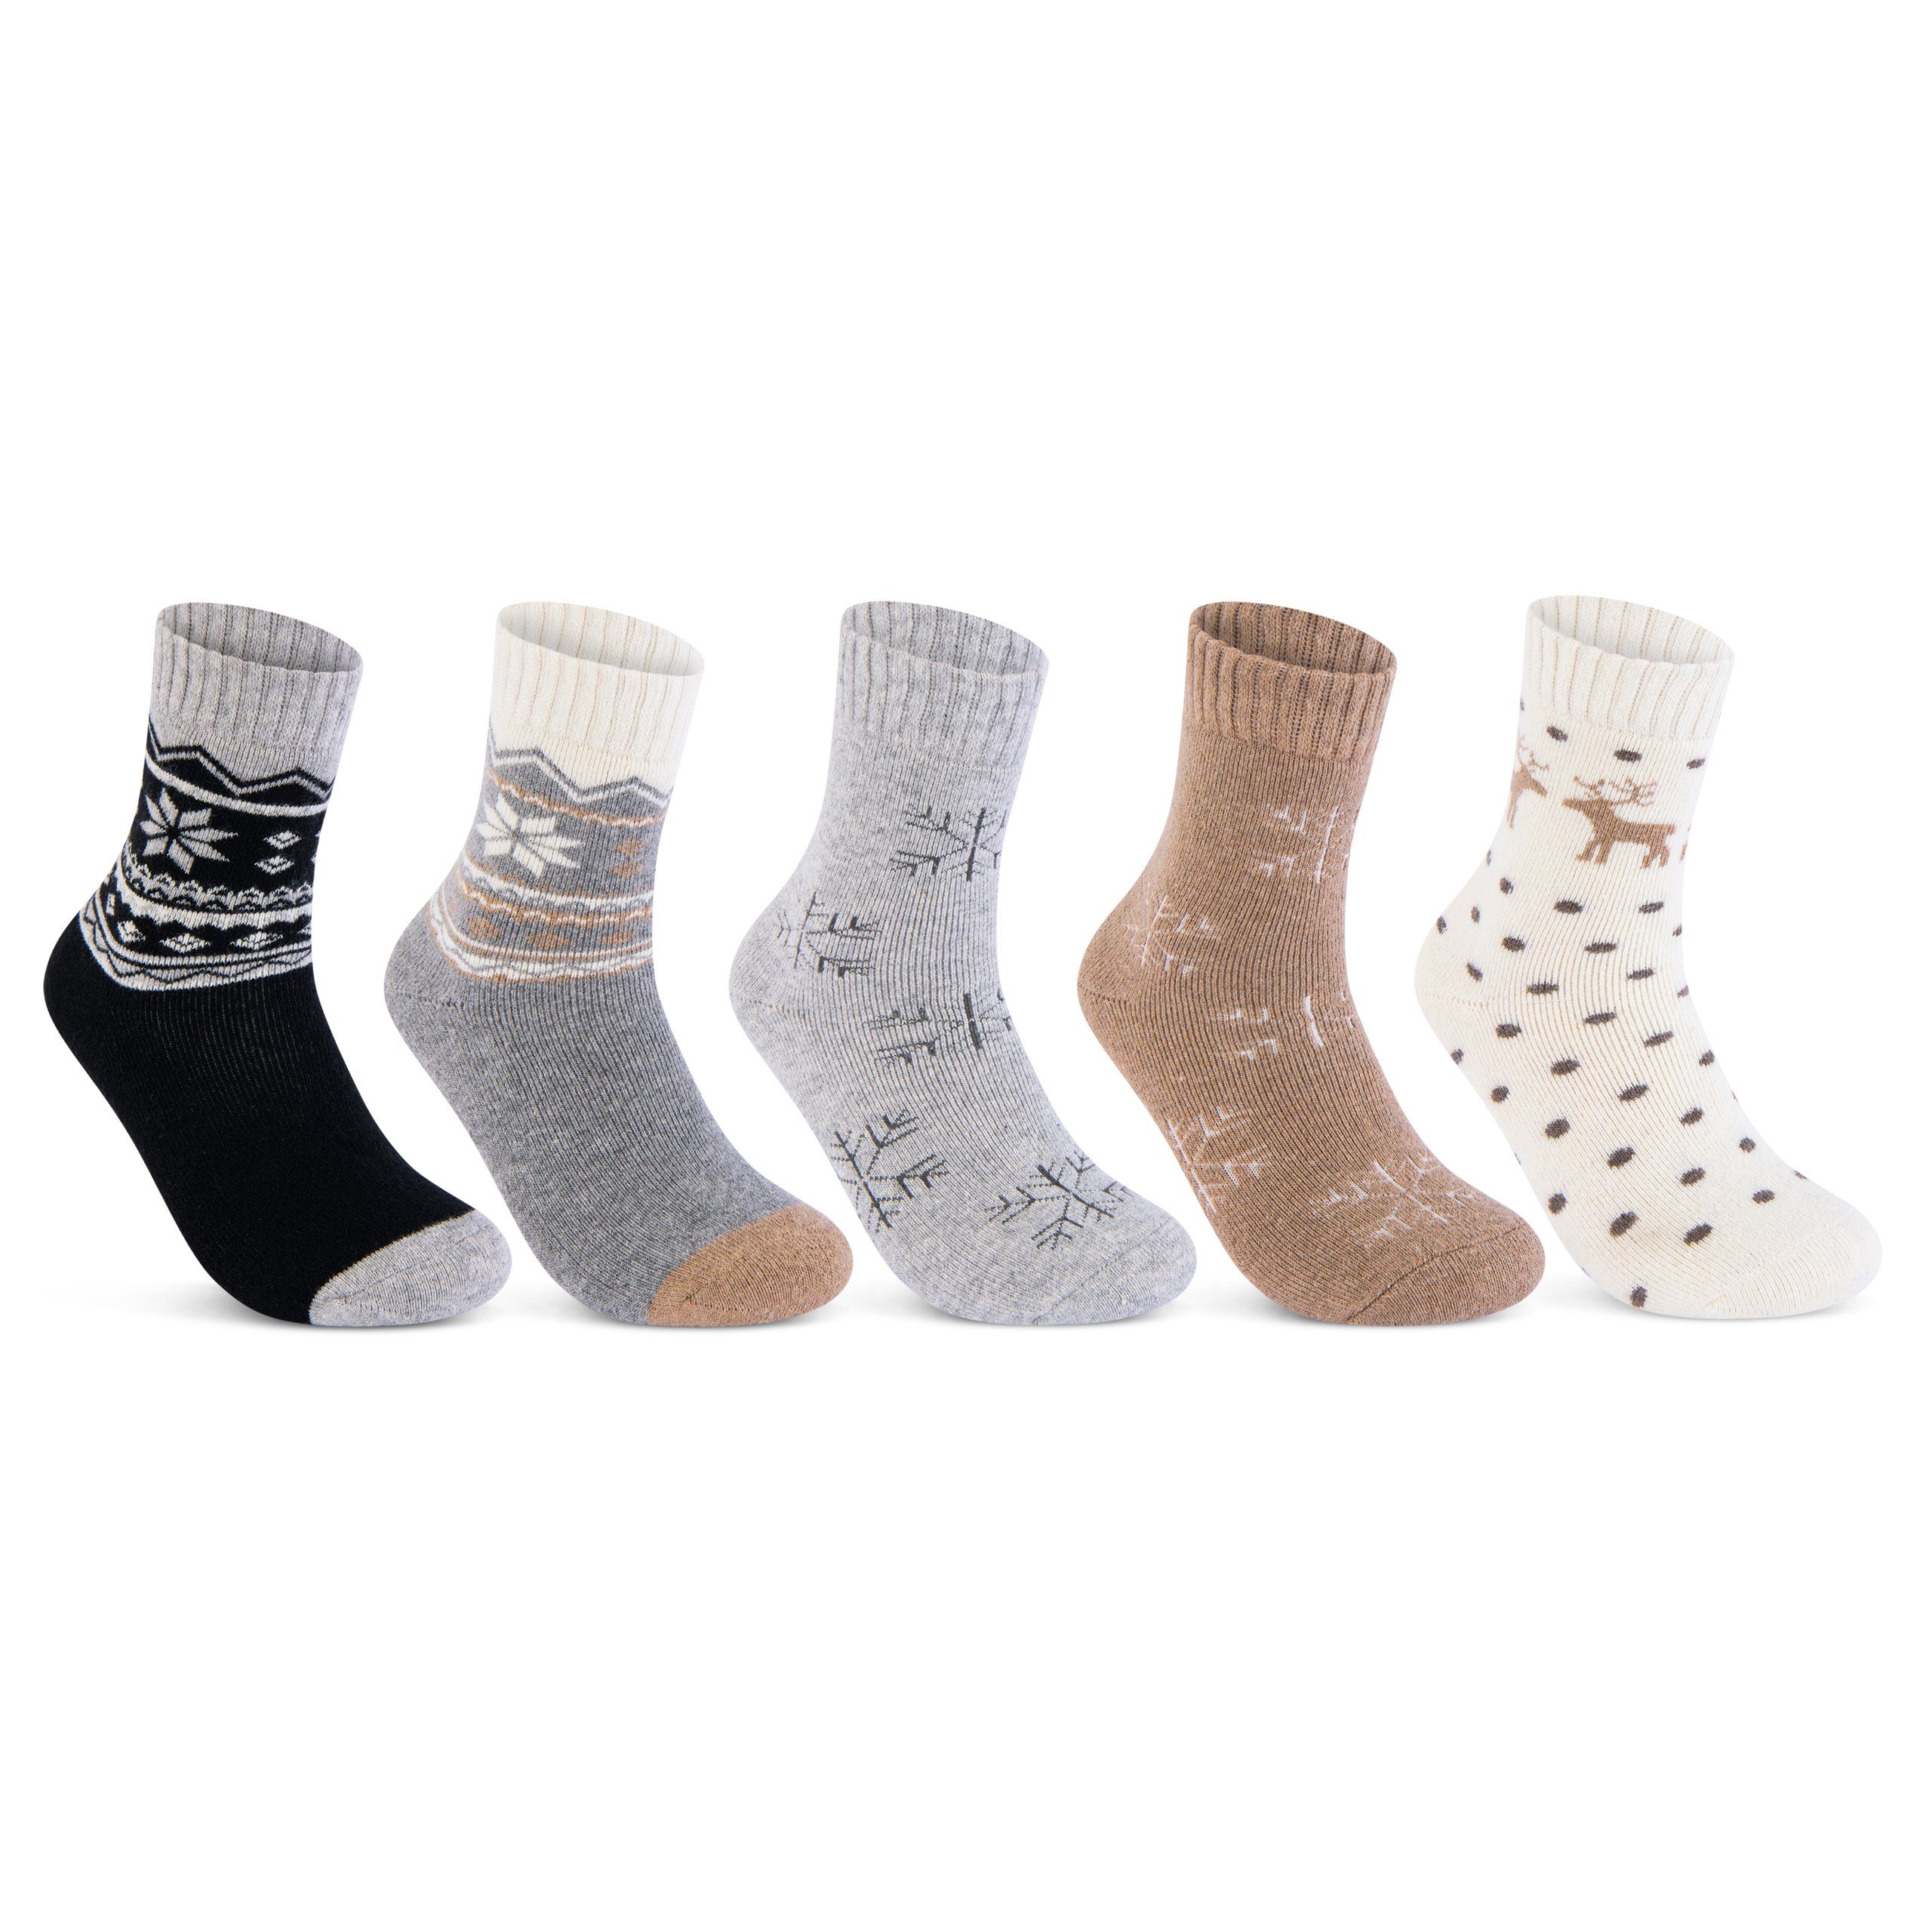 sockenkauf24 Thermosocken »5 Paar Damen THERMO Socken mit Wolle  Innenfrottee Wintersocken« (Sortierung1., 35-38) warme Haussocken - 37800  online kaufen | OTTO